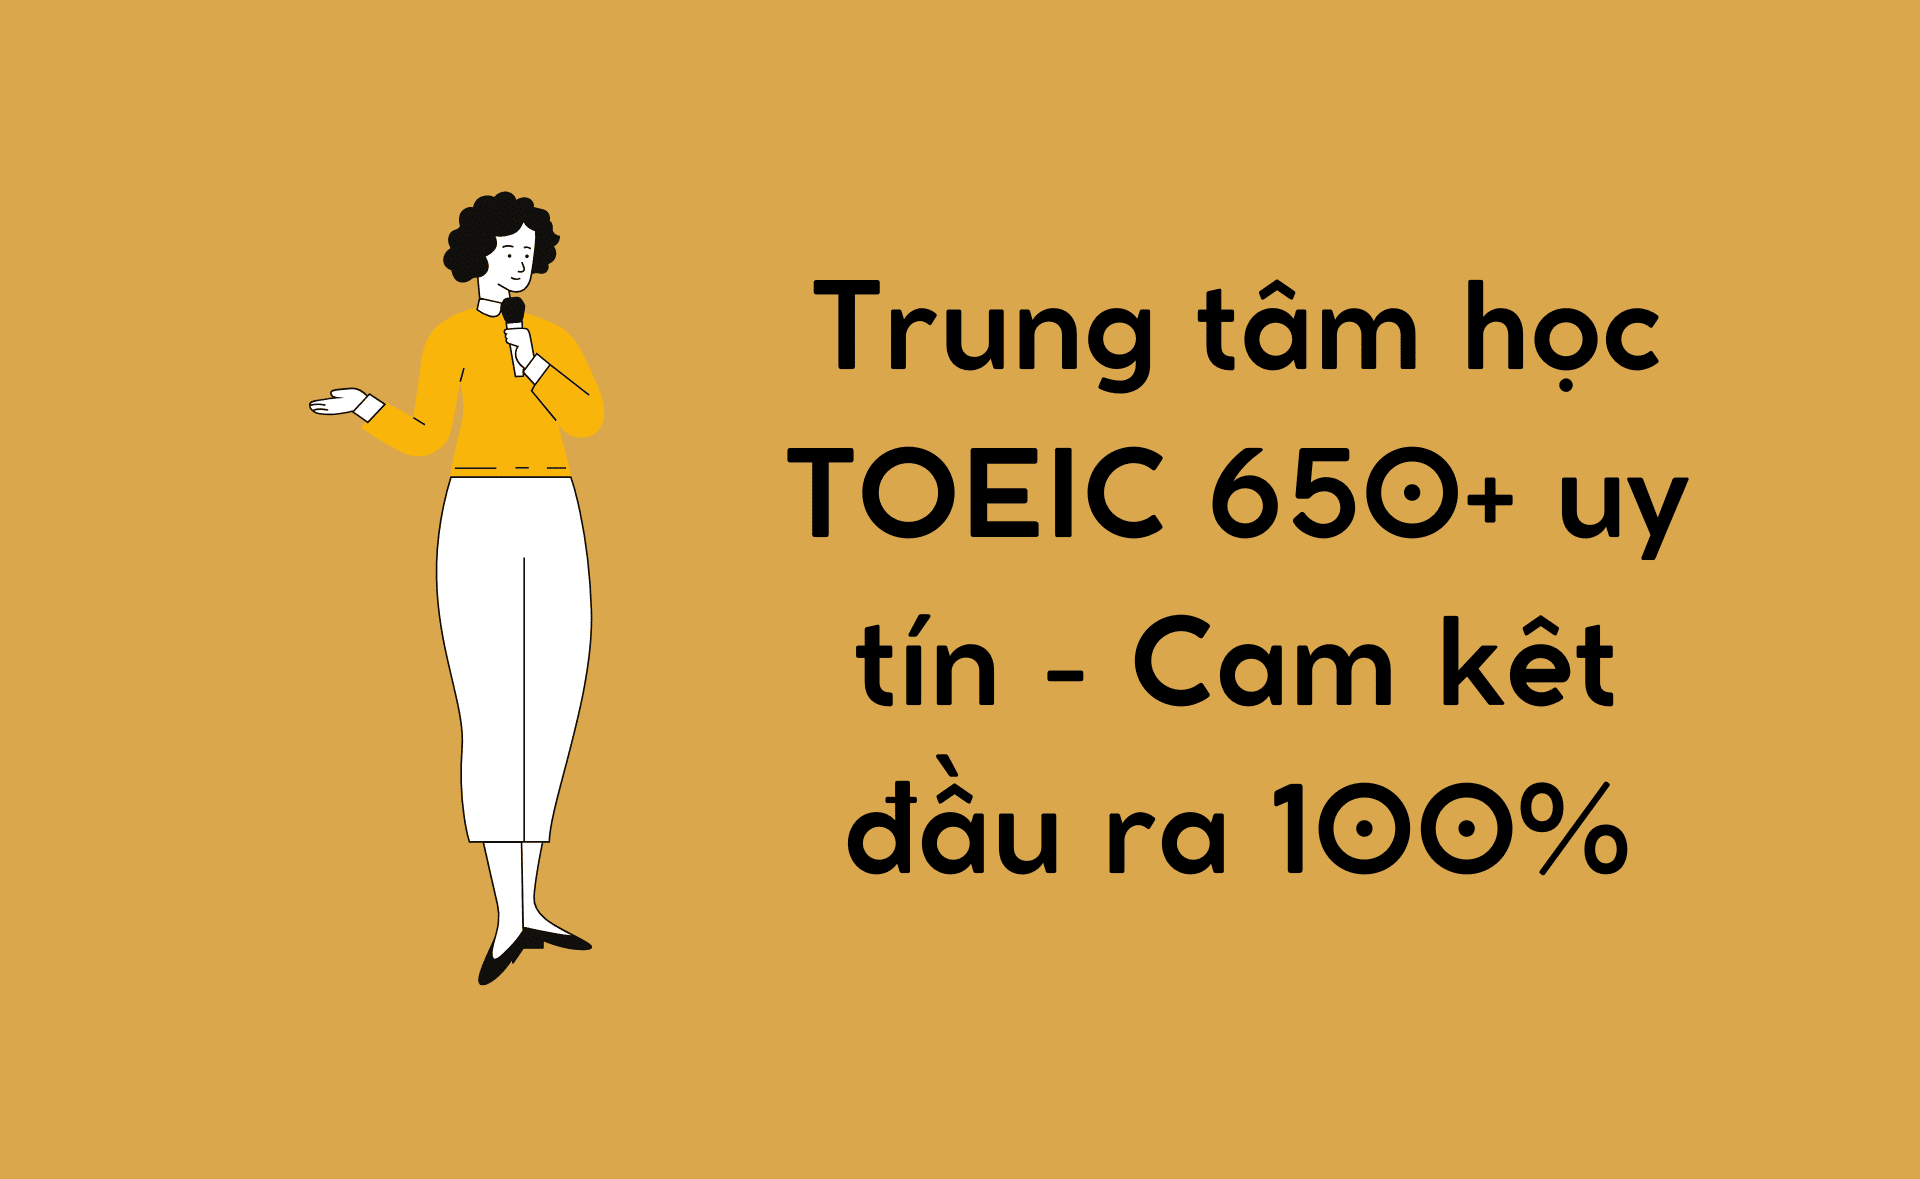 TOEIC 650+